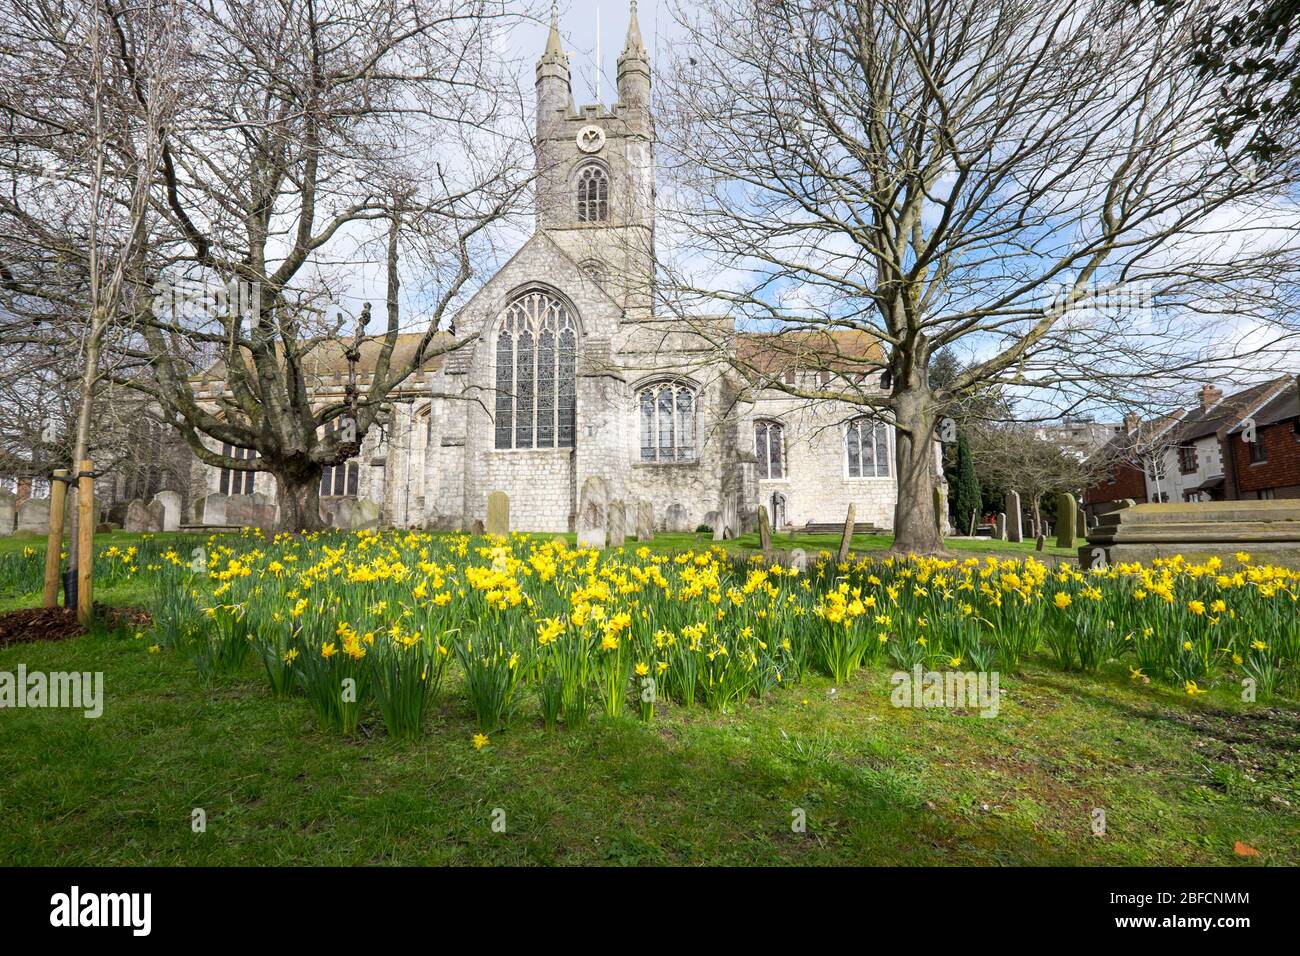 Ashford, Kent, Regno Unito - 9 marzo 2020: St Mary la chiesa della Vergine nel centro della città in primavera con i narcisi in cimitero Foto Stock